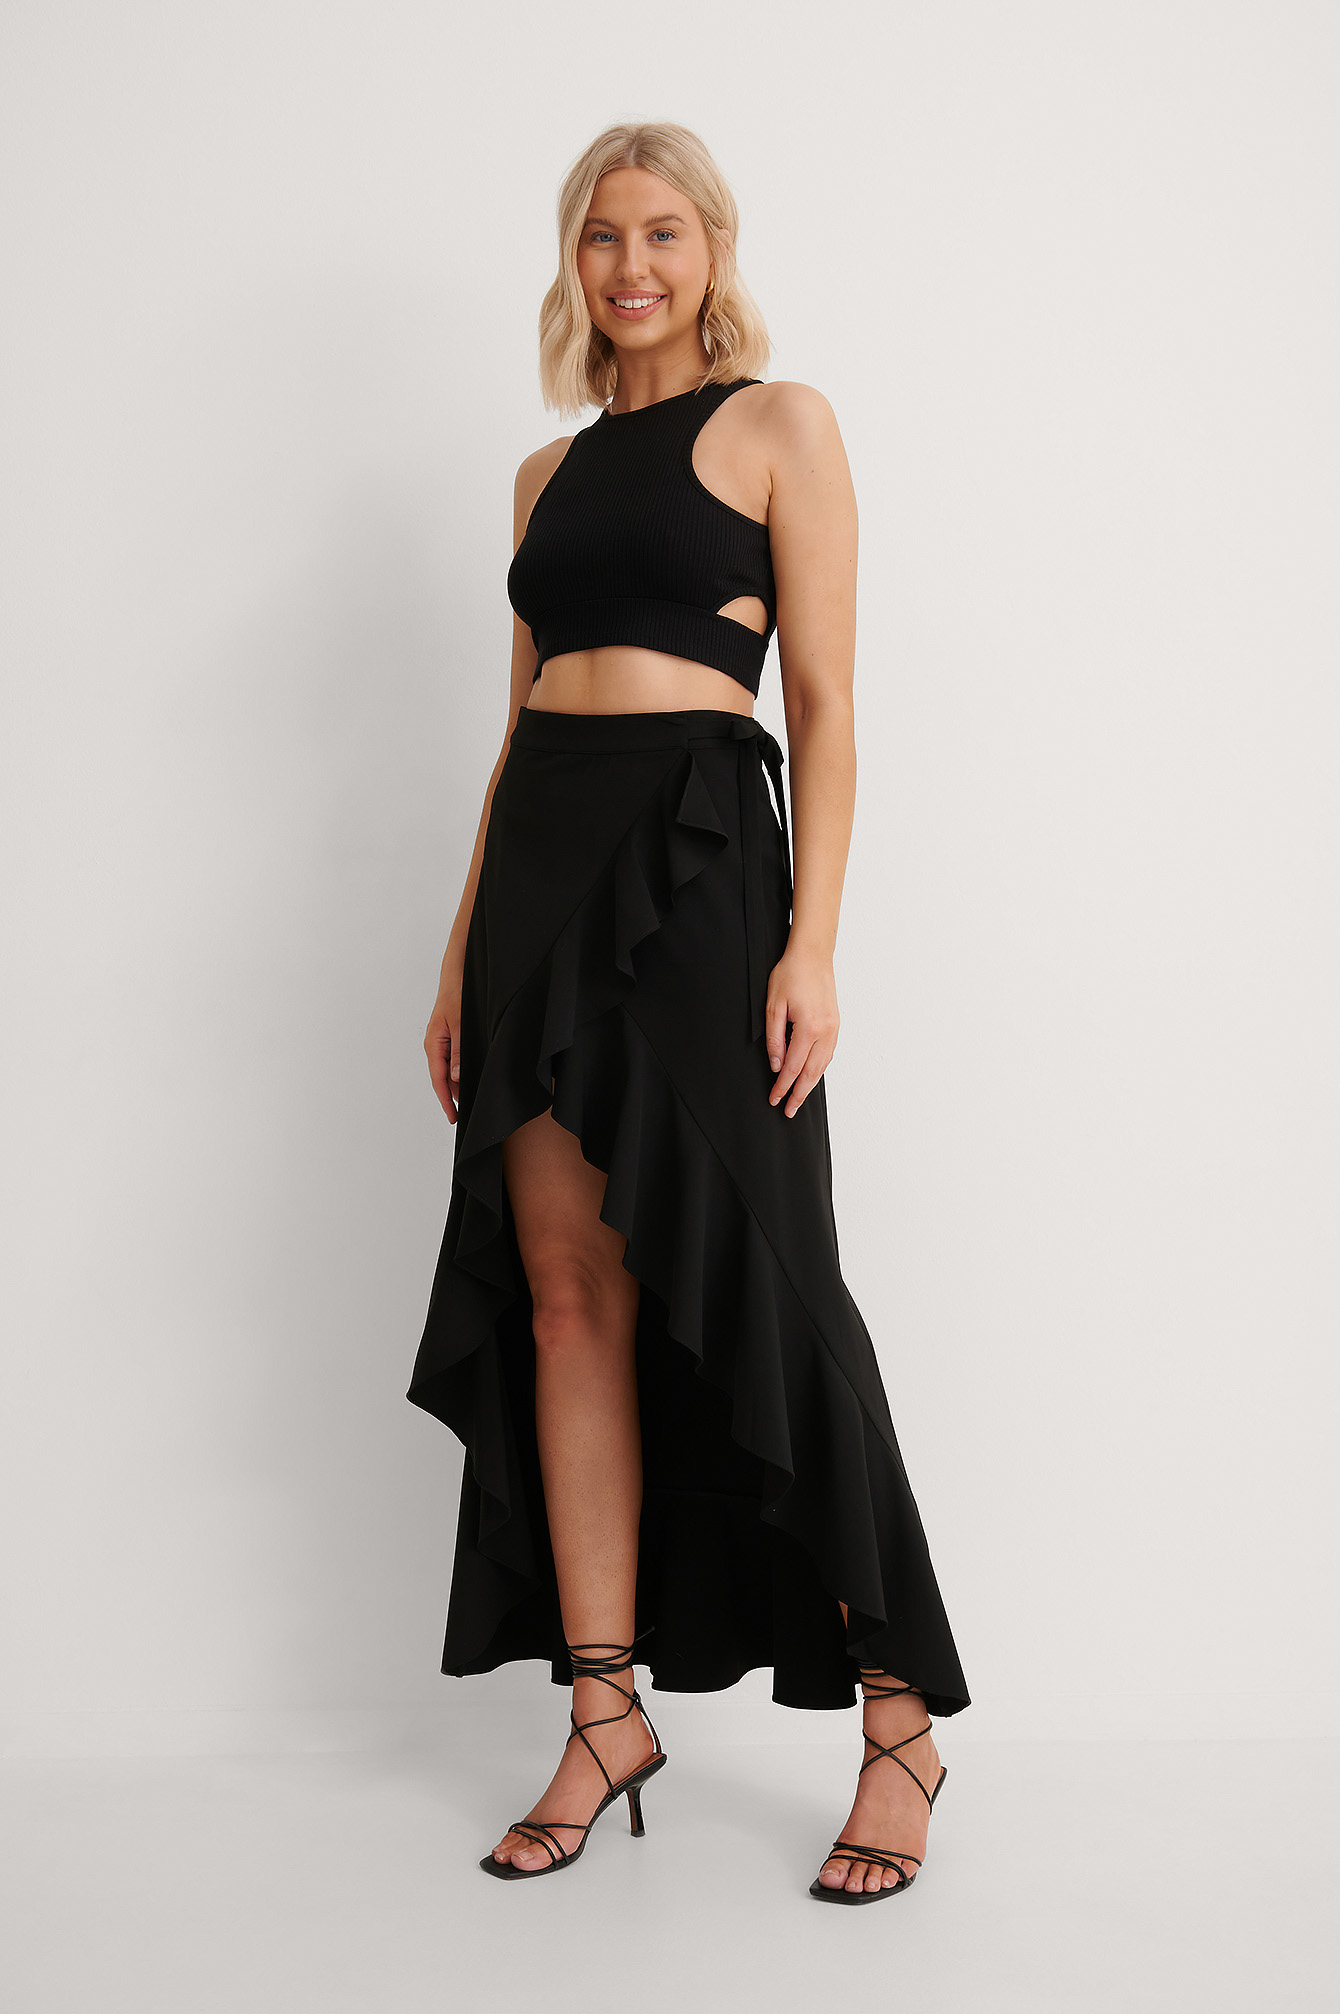 Anika Teller X Na-kd Wrap Around Flounce Detail Skirt - Black